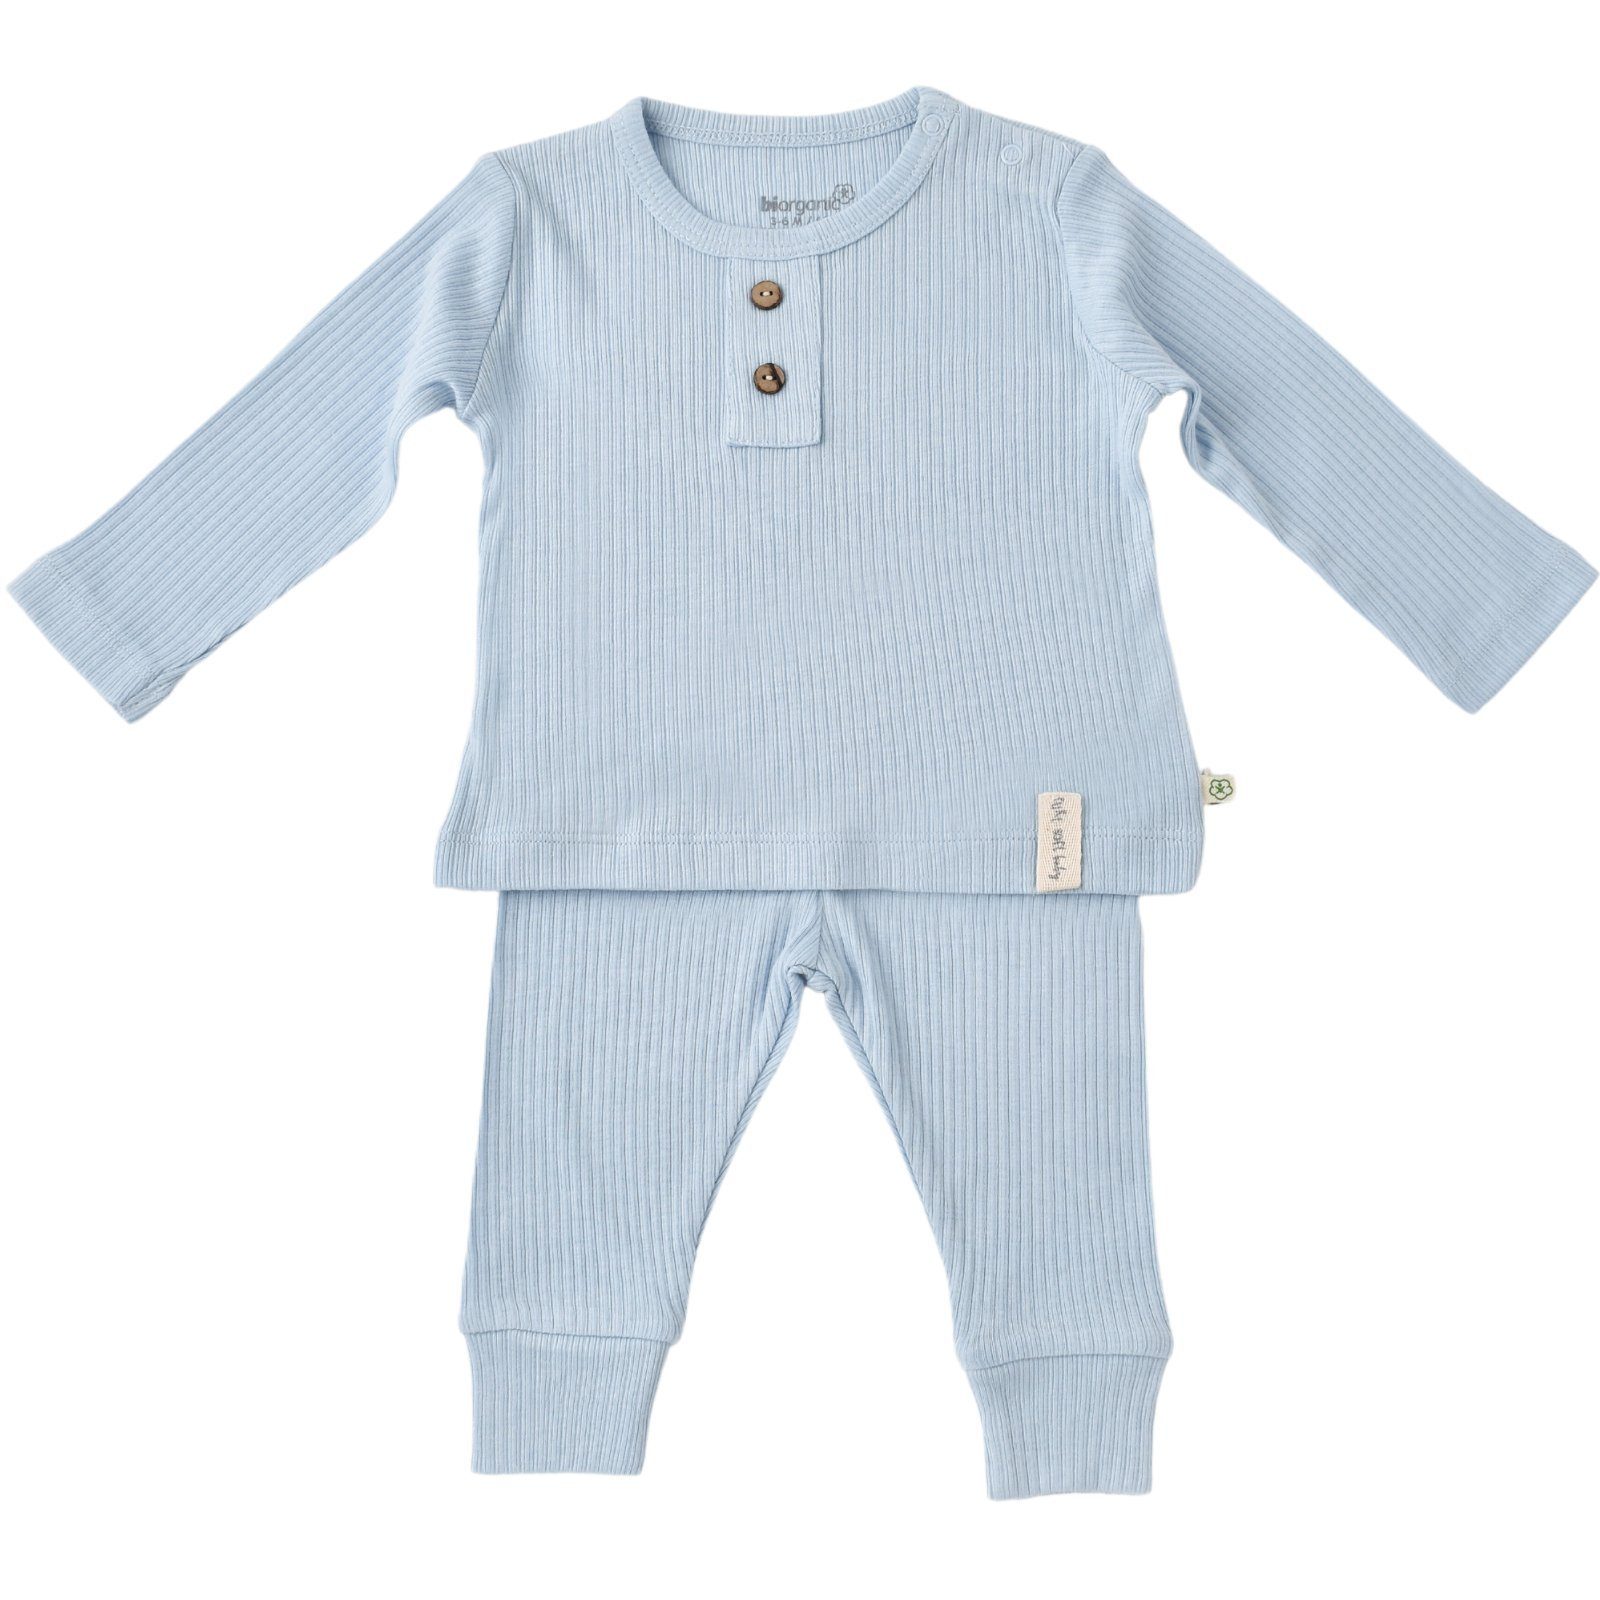 biorganic Pyjama Soft Modal Shirt & Hose Baby Set für Jungen und Mädchen Unisex (Pyjama-Set, 2 tlg., Langarmshirt + Hose) gerippte Textilstruktur, 50% Bio-Baumwolle 50% Modal Größe 62-80 blau